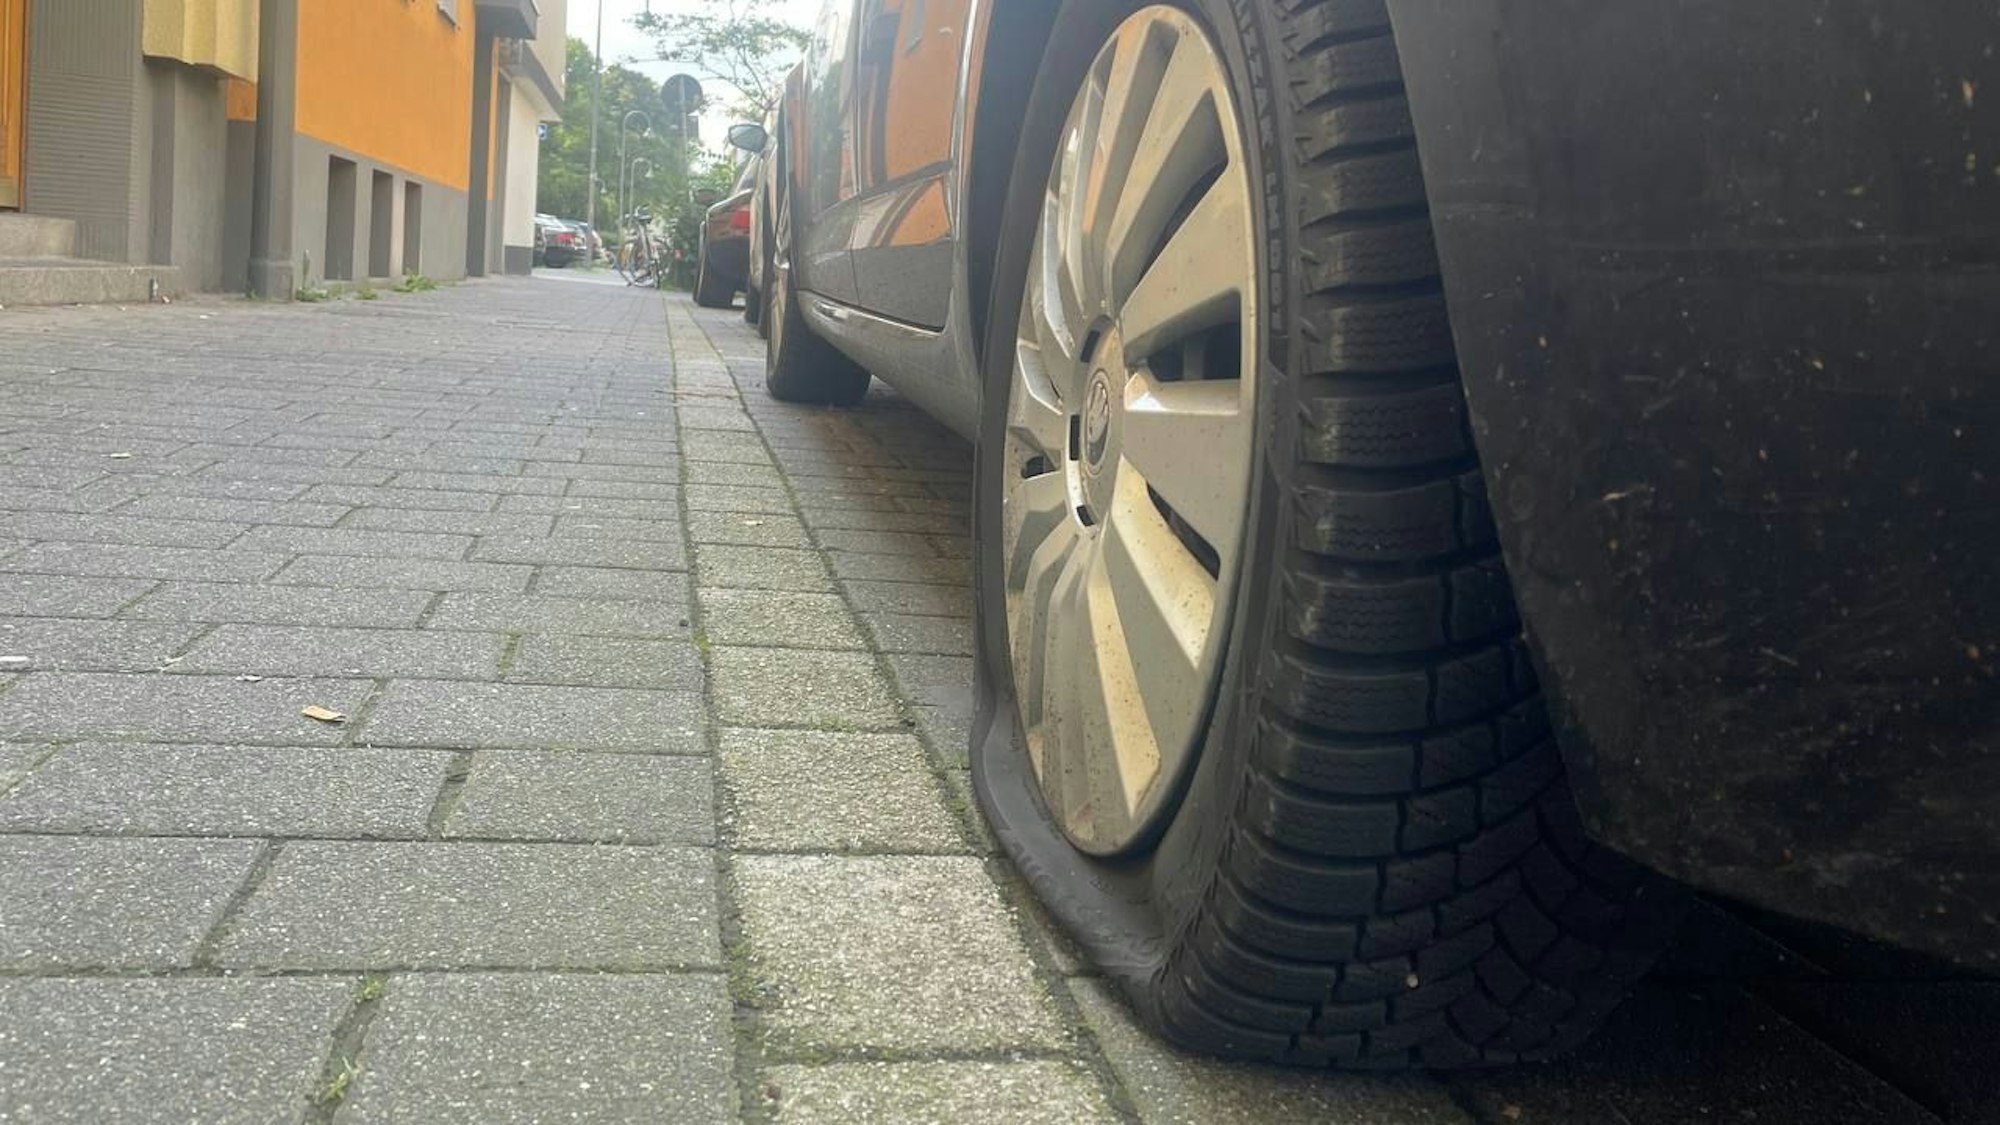 Parkendes Auto mit einem zerstochenen Reifen